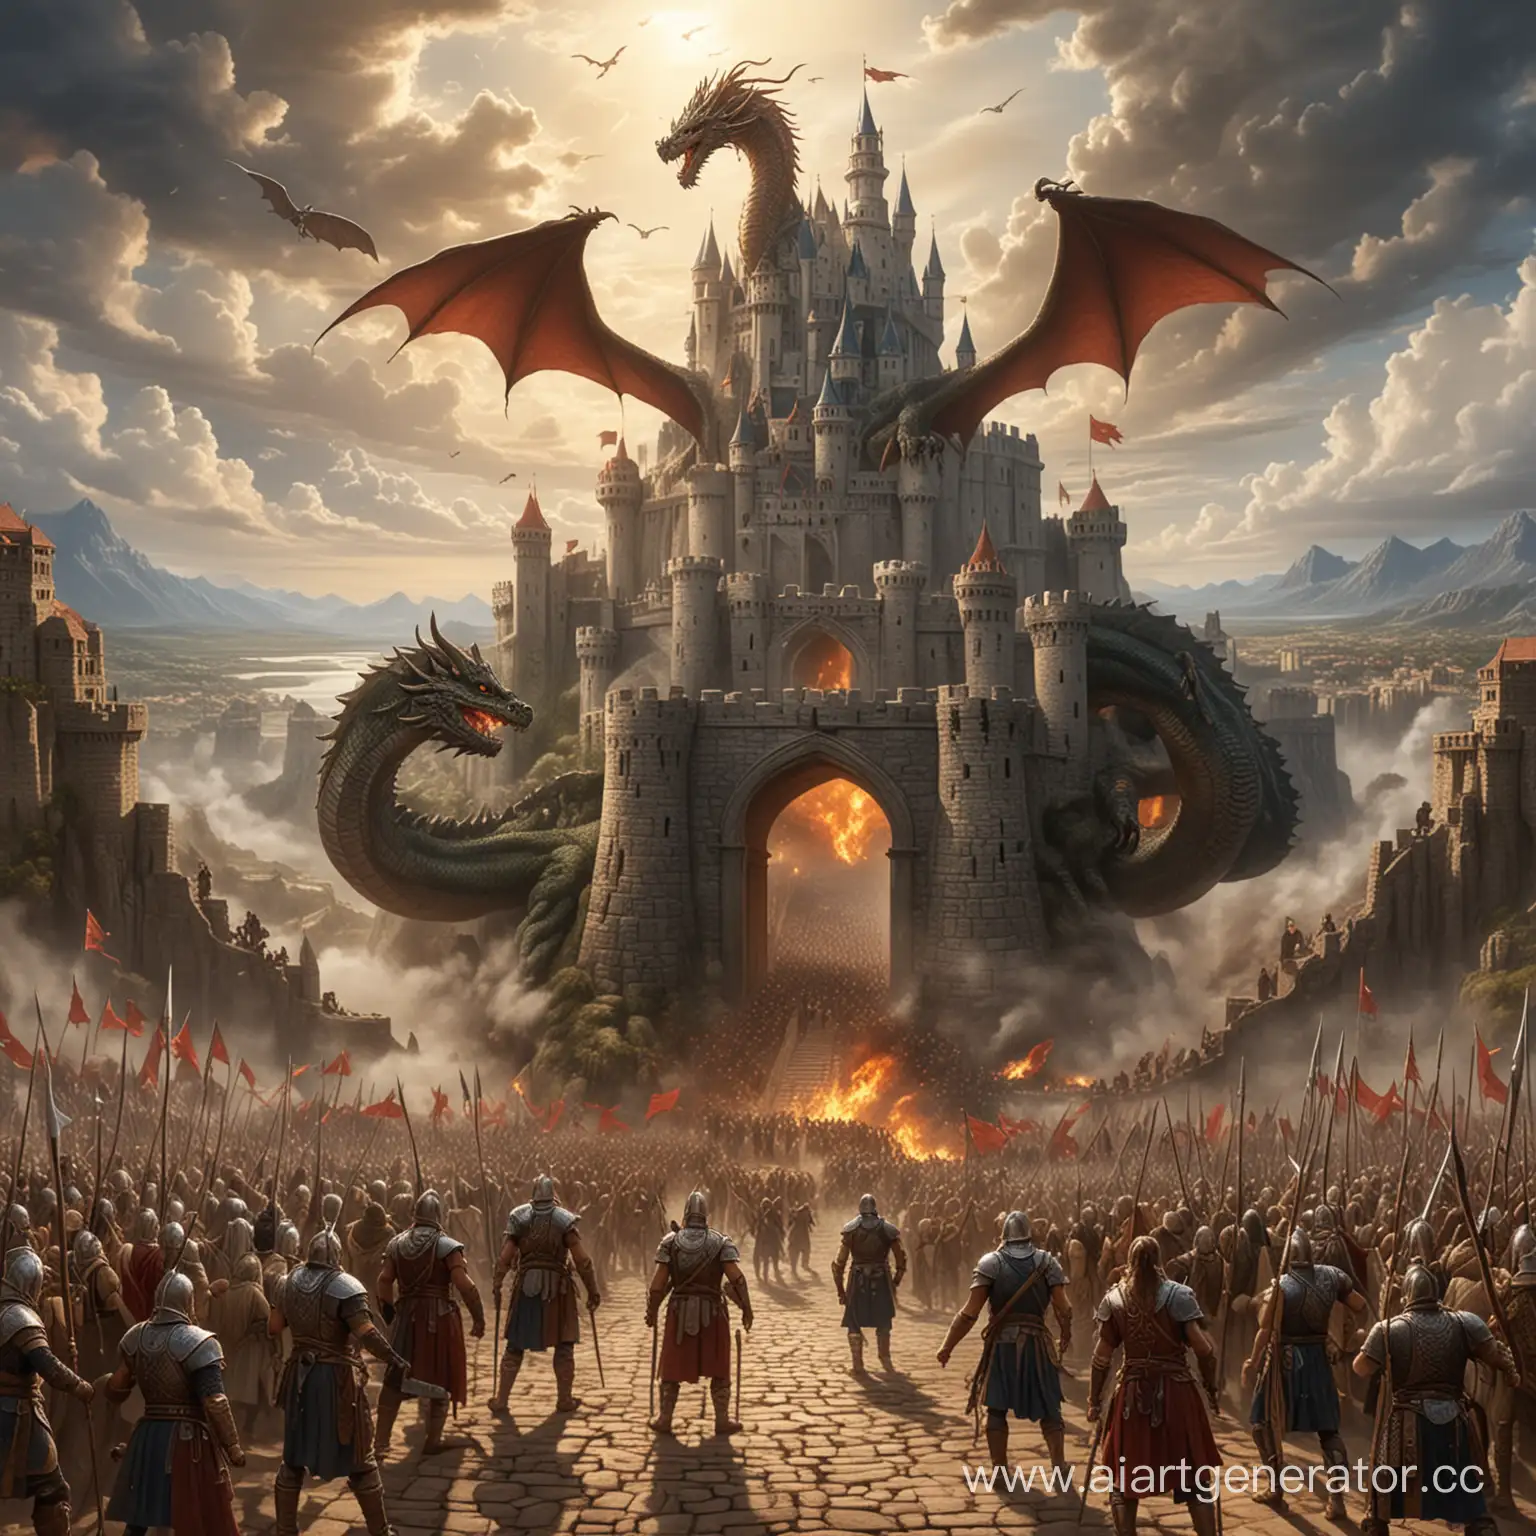 войны бога защищают замок и людей от дракона